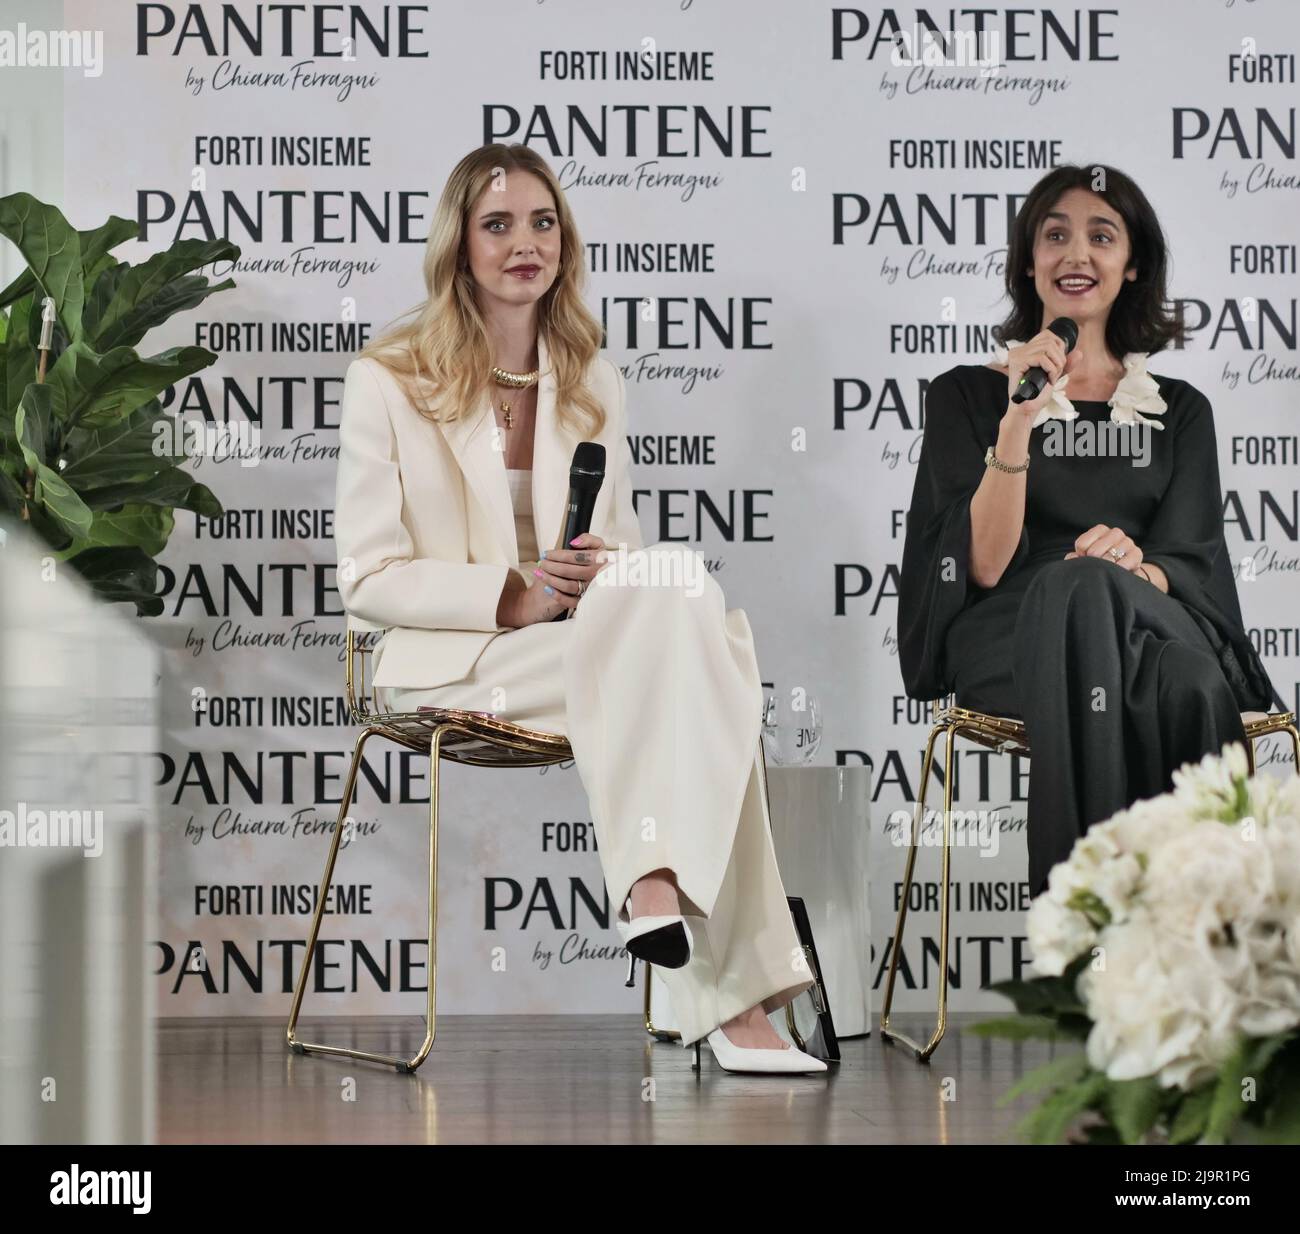 Talk pantene Live instagram incontro con Chiara Ferragni, Valeria consorte e Danila De Stefano Foto Stock